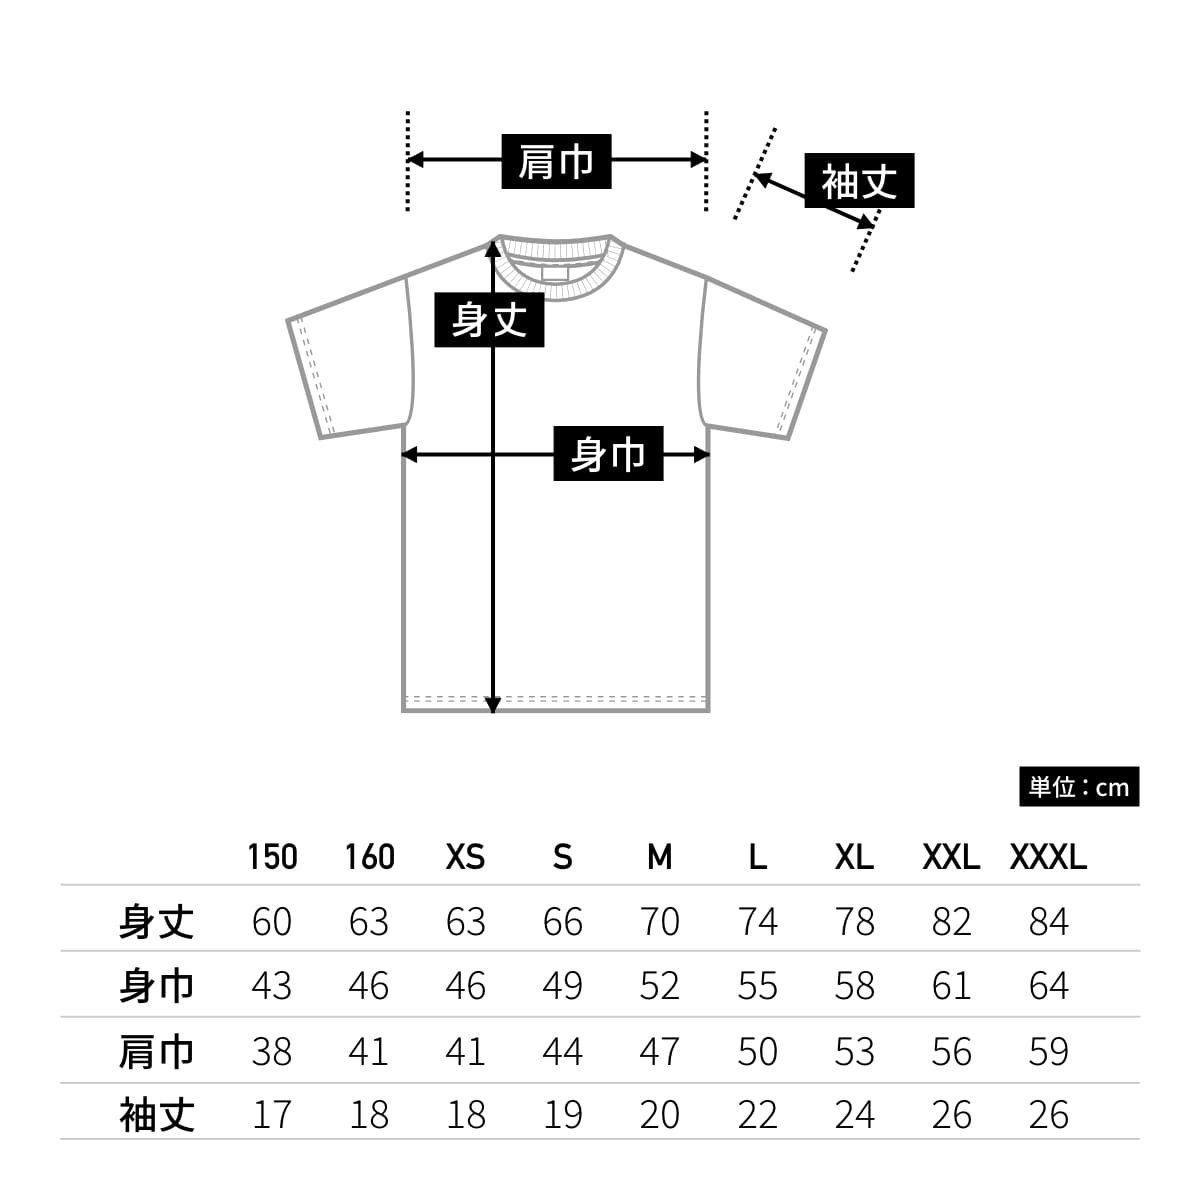 5.6オンス ヘビーウェイト リミテッドカラーTシャツ | キッズ | 1枚 | 00095-CVE | キャメル